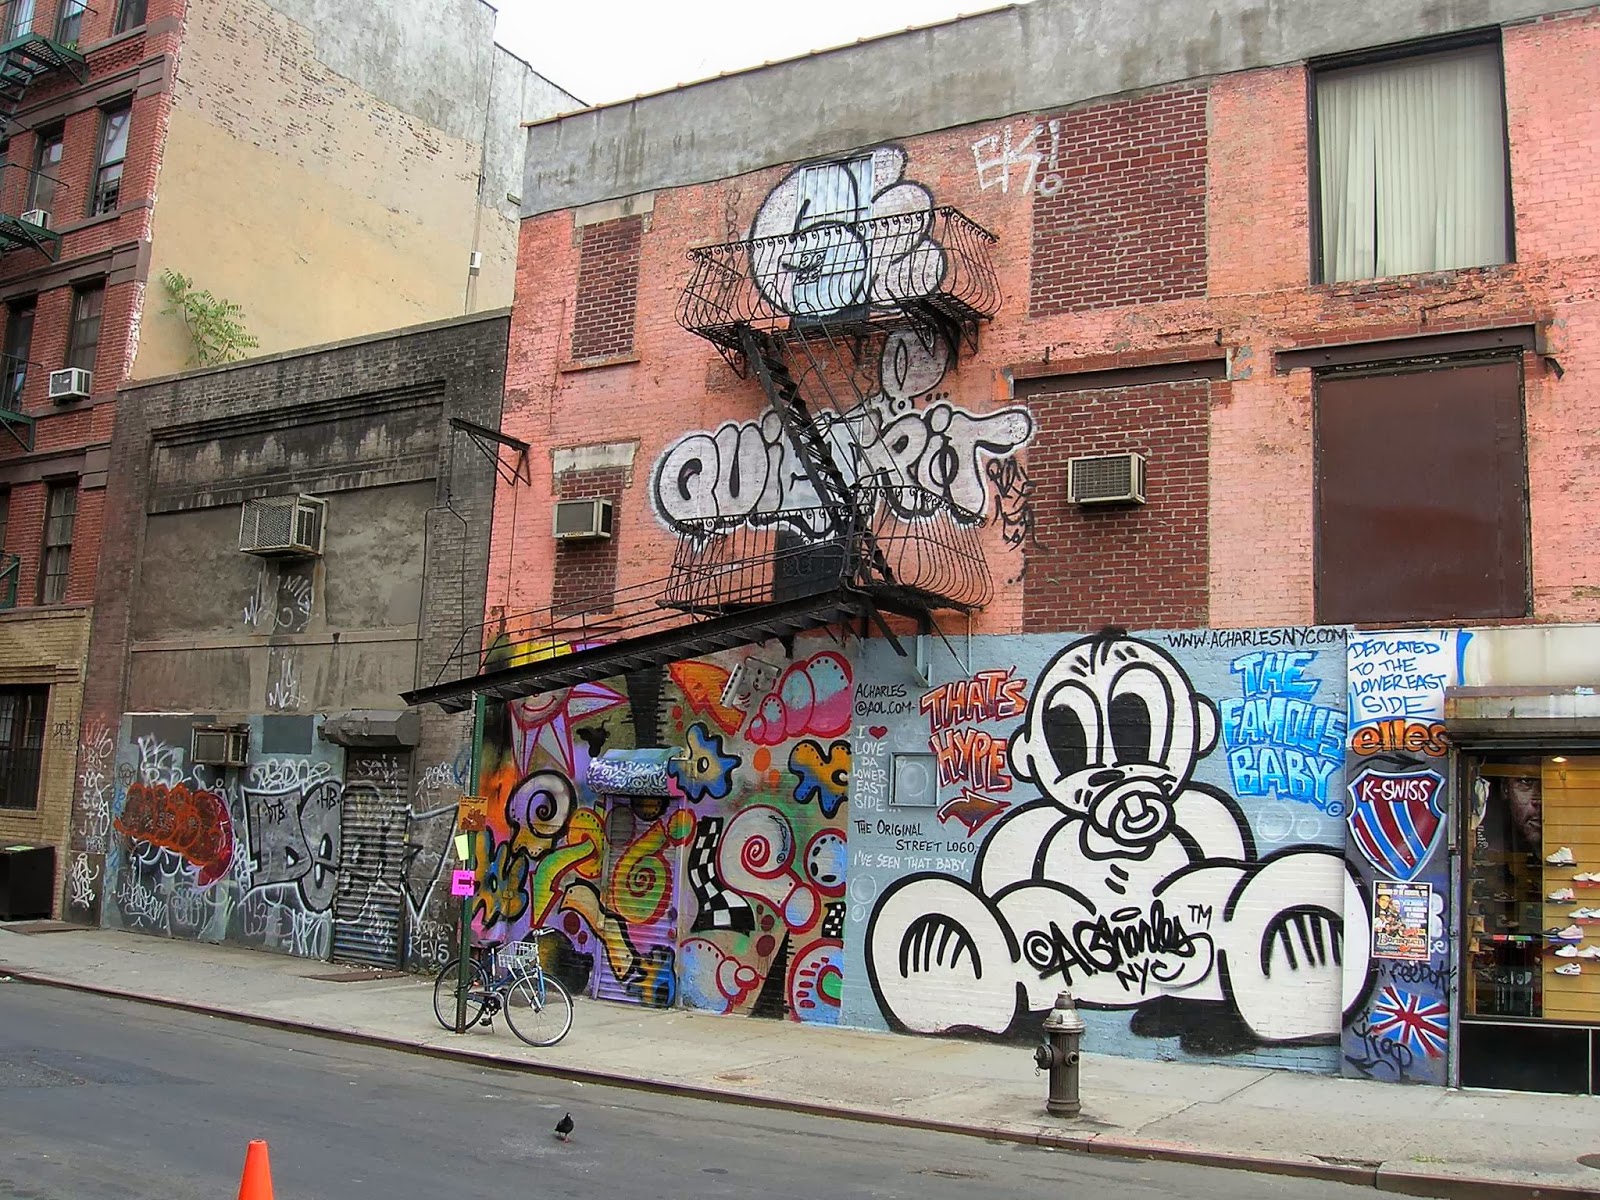 east side wallpaper,graffiti,street art,art,mural,facade